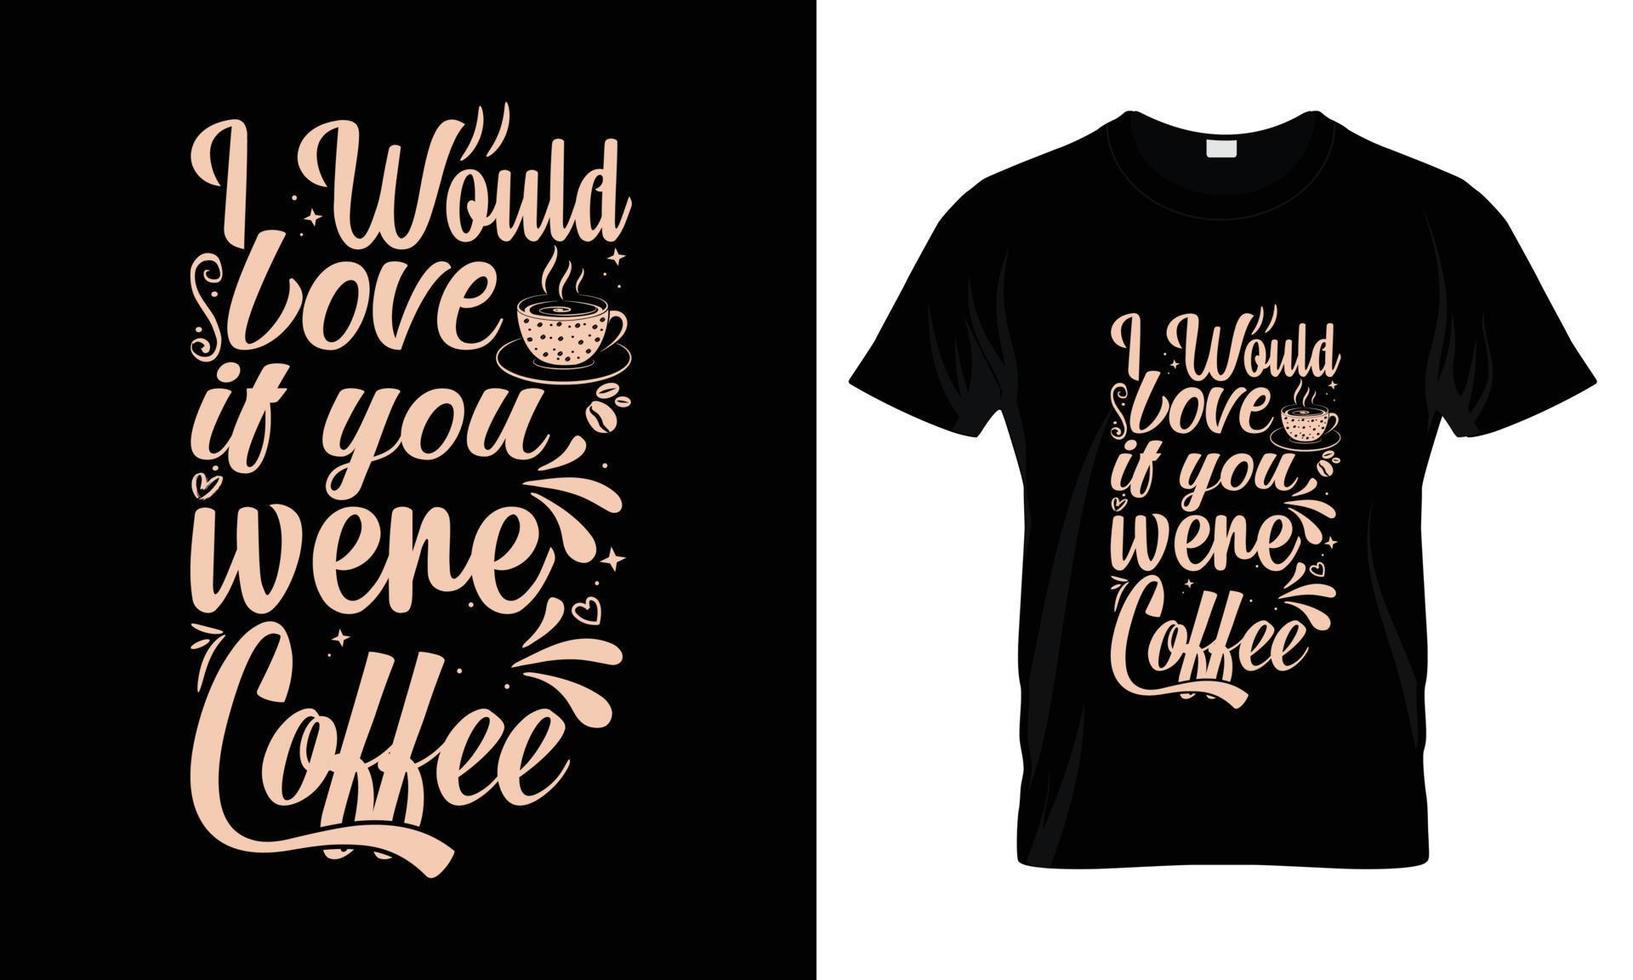 io voluto amore Se voi erano caffè lettering tipografia t camicia design vettore